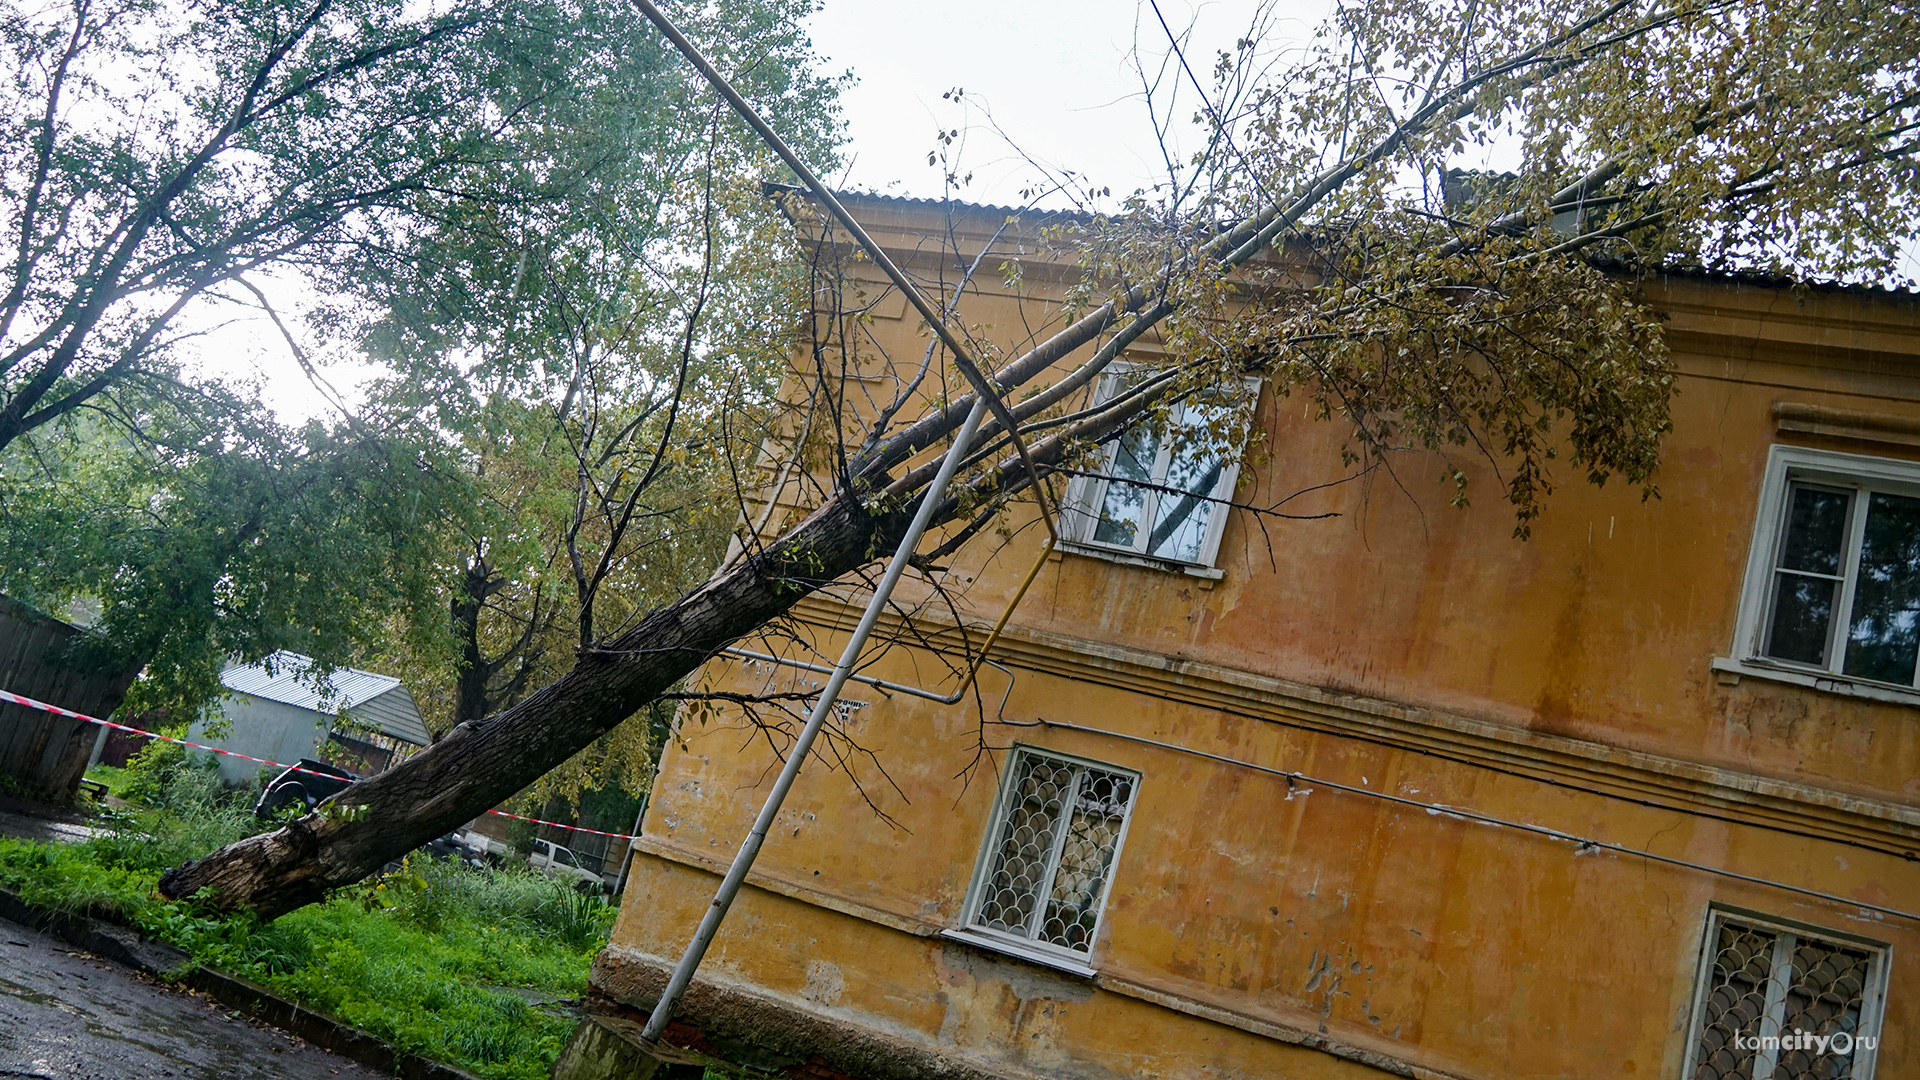 Дома без электричества, без газа и помятые машины — последствия циклона в Комсомольске ещё только предстоит оценить